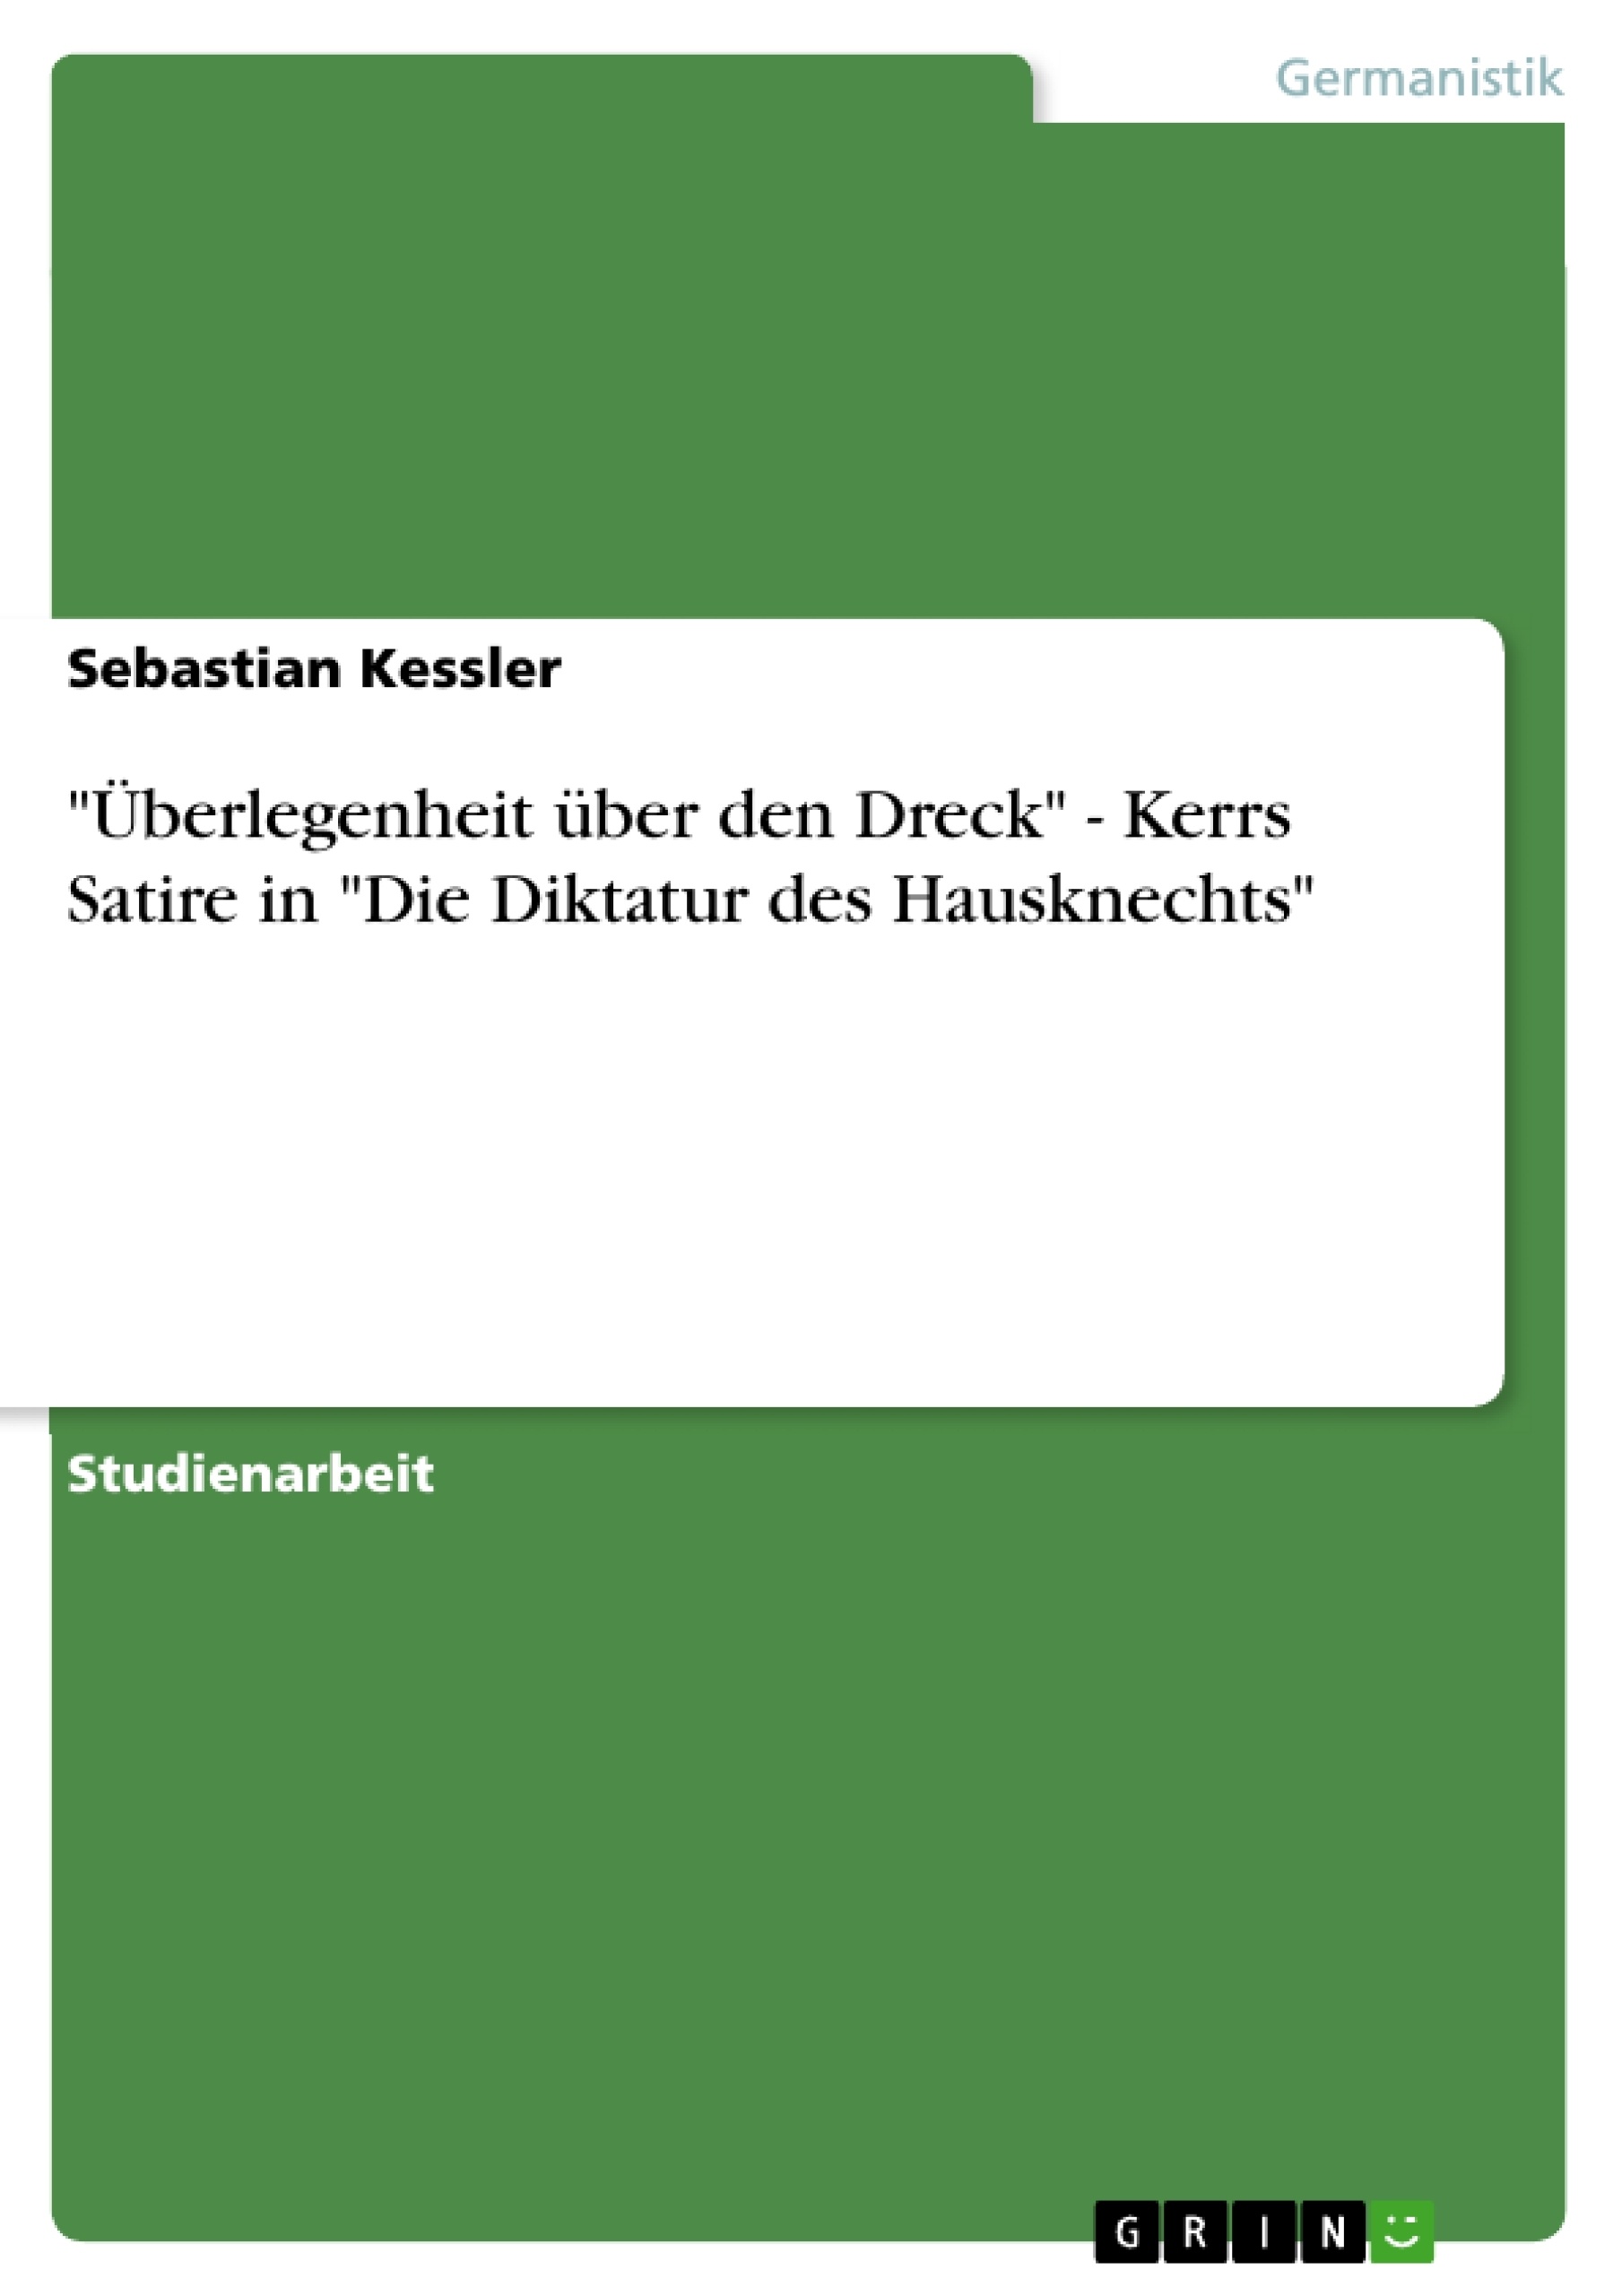 Título: "Überlegenheit über den Dreck" - Kerrs Satire in "Die Diktatur des Hausknechts"